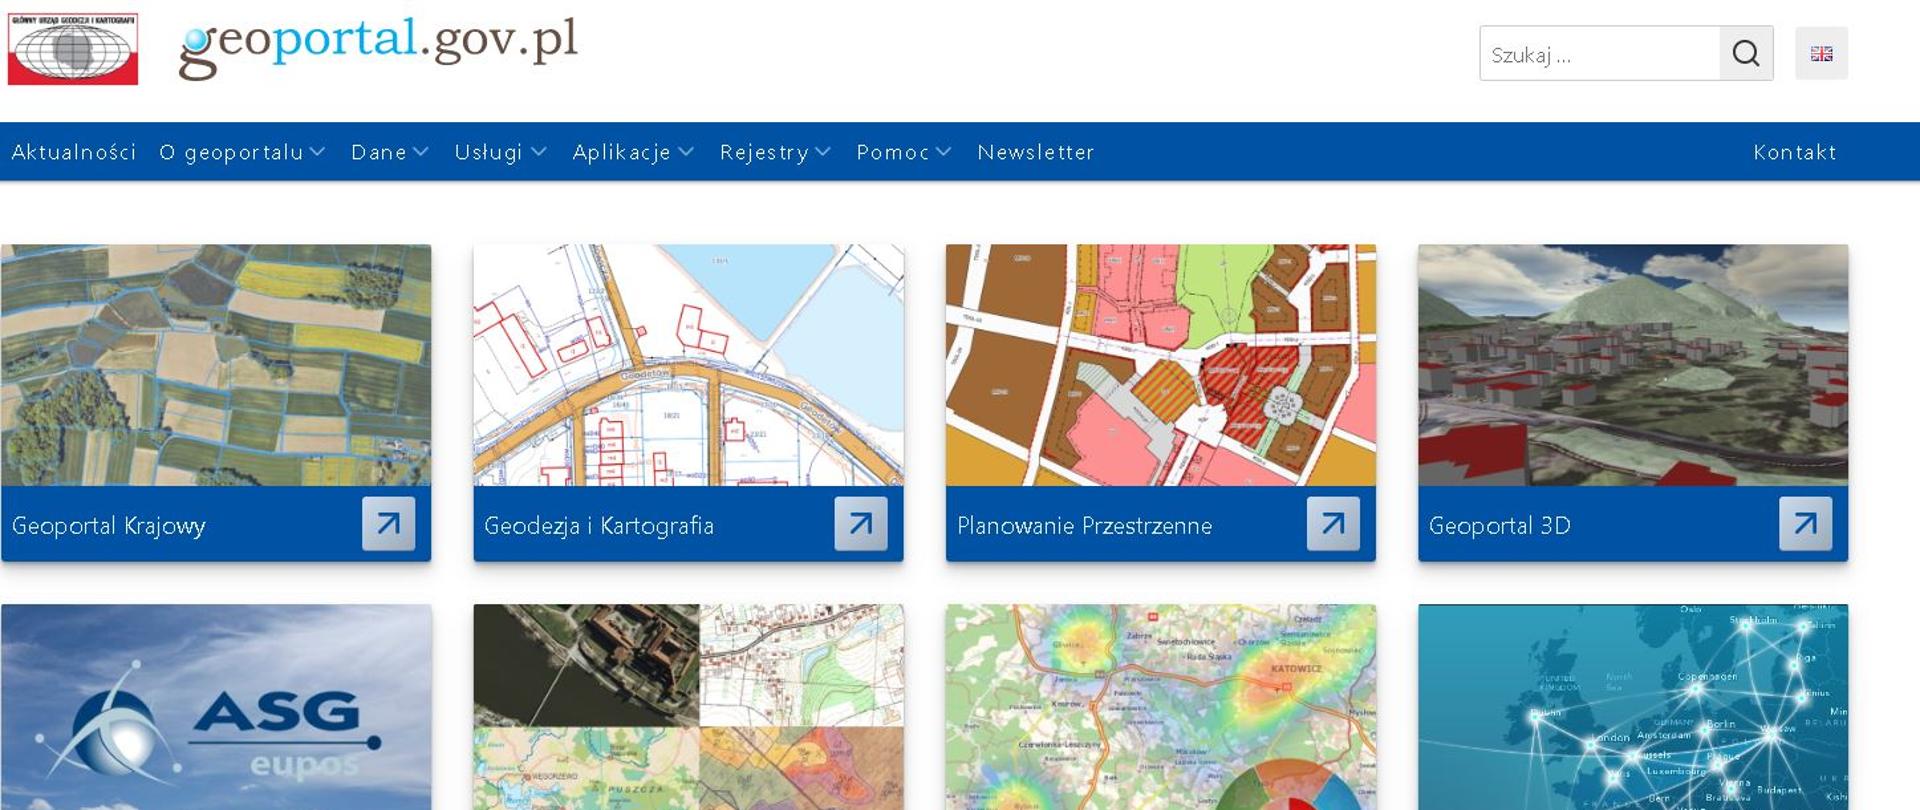 Ilustracja przedstawia stronę główną Geoportalu z nową kompozycją "Geodezja i Kartografia"